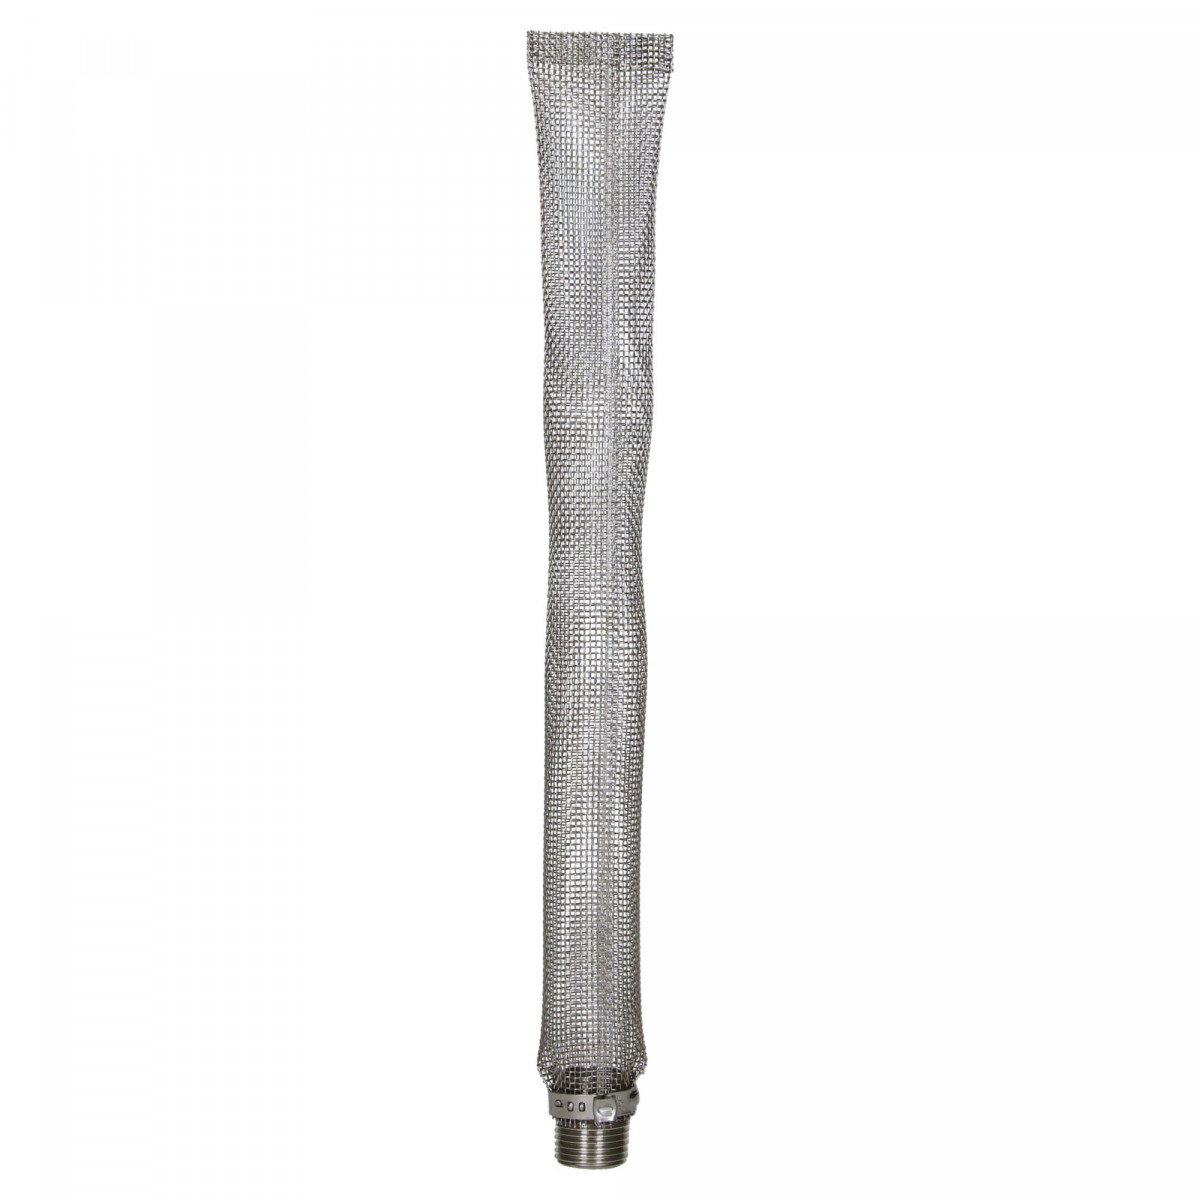 Filterscherm lang - bazooka - 1/2" draad